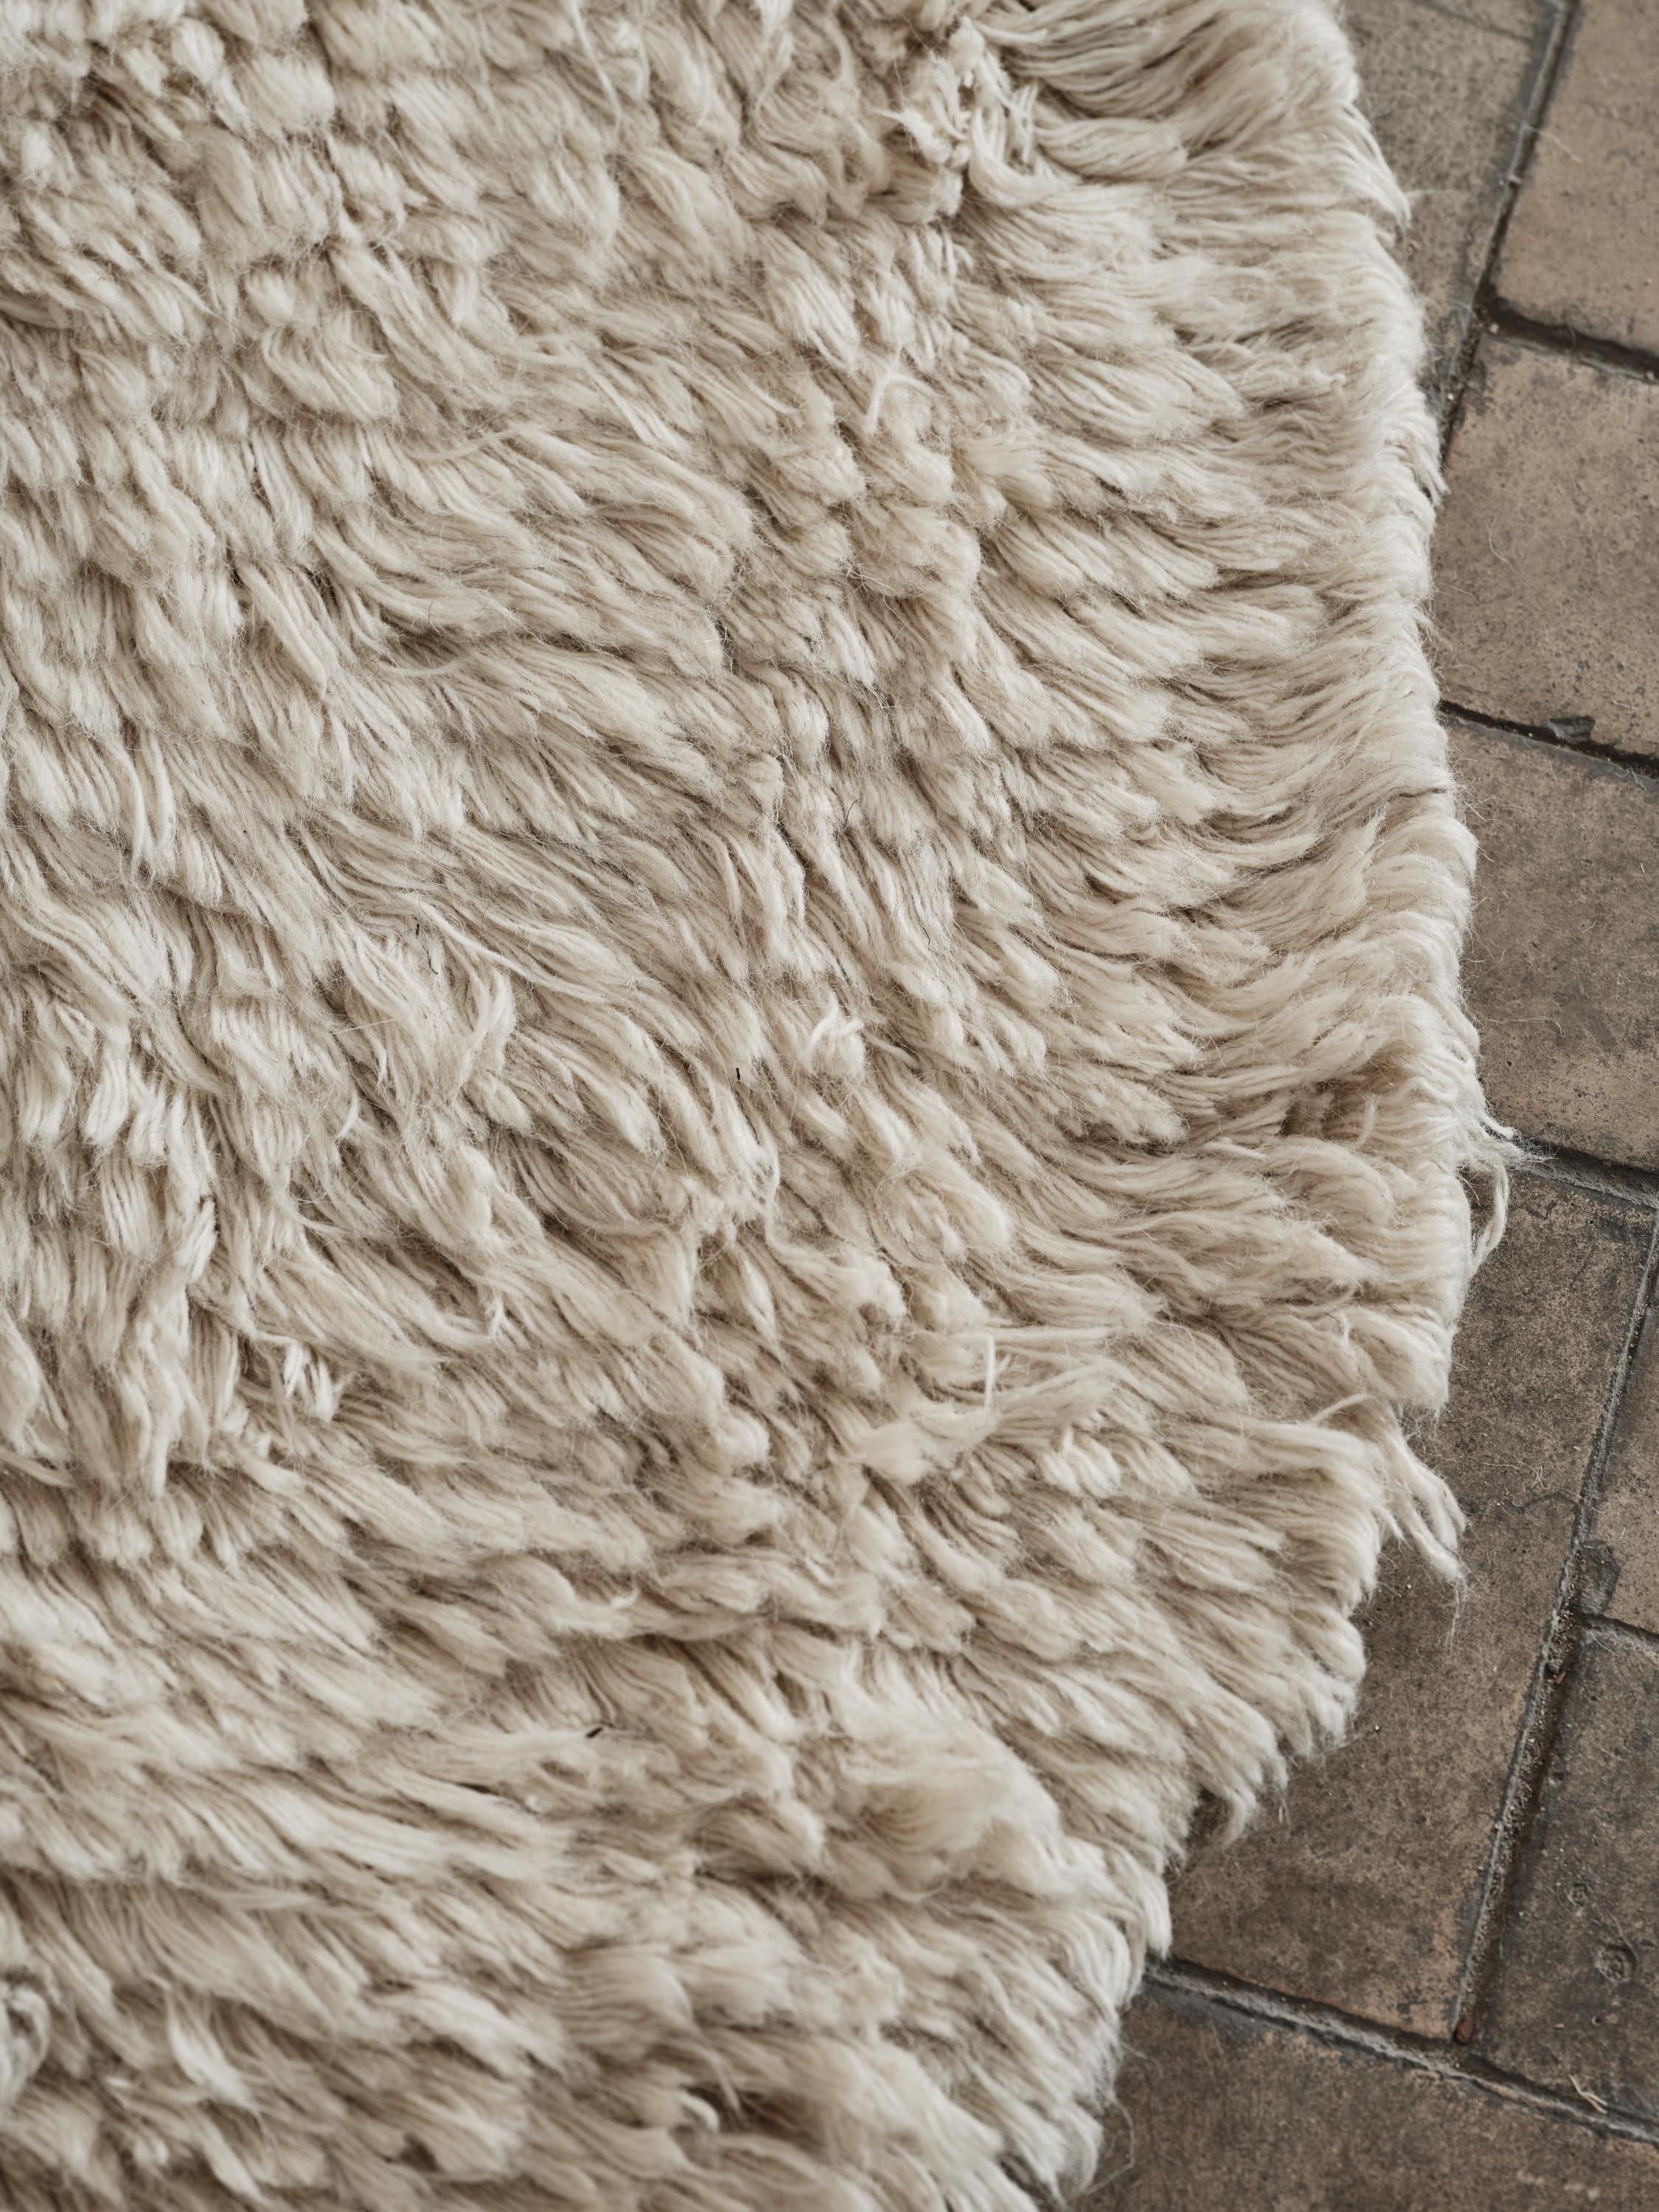 Teppich Nr. 09 von Cappelen Dimyr
Abmessungen: D290 x H350 cm
MATERIALIEN: 85% Wolle 15% Baumwolle

no.09 ist ein sanftes und kunstvolles Statement mit dezenter Bohème-Eleganz. Seine organische und unregelmäßige Form ist aus einer cremefarbenen,